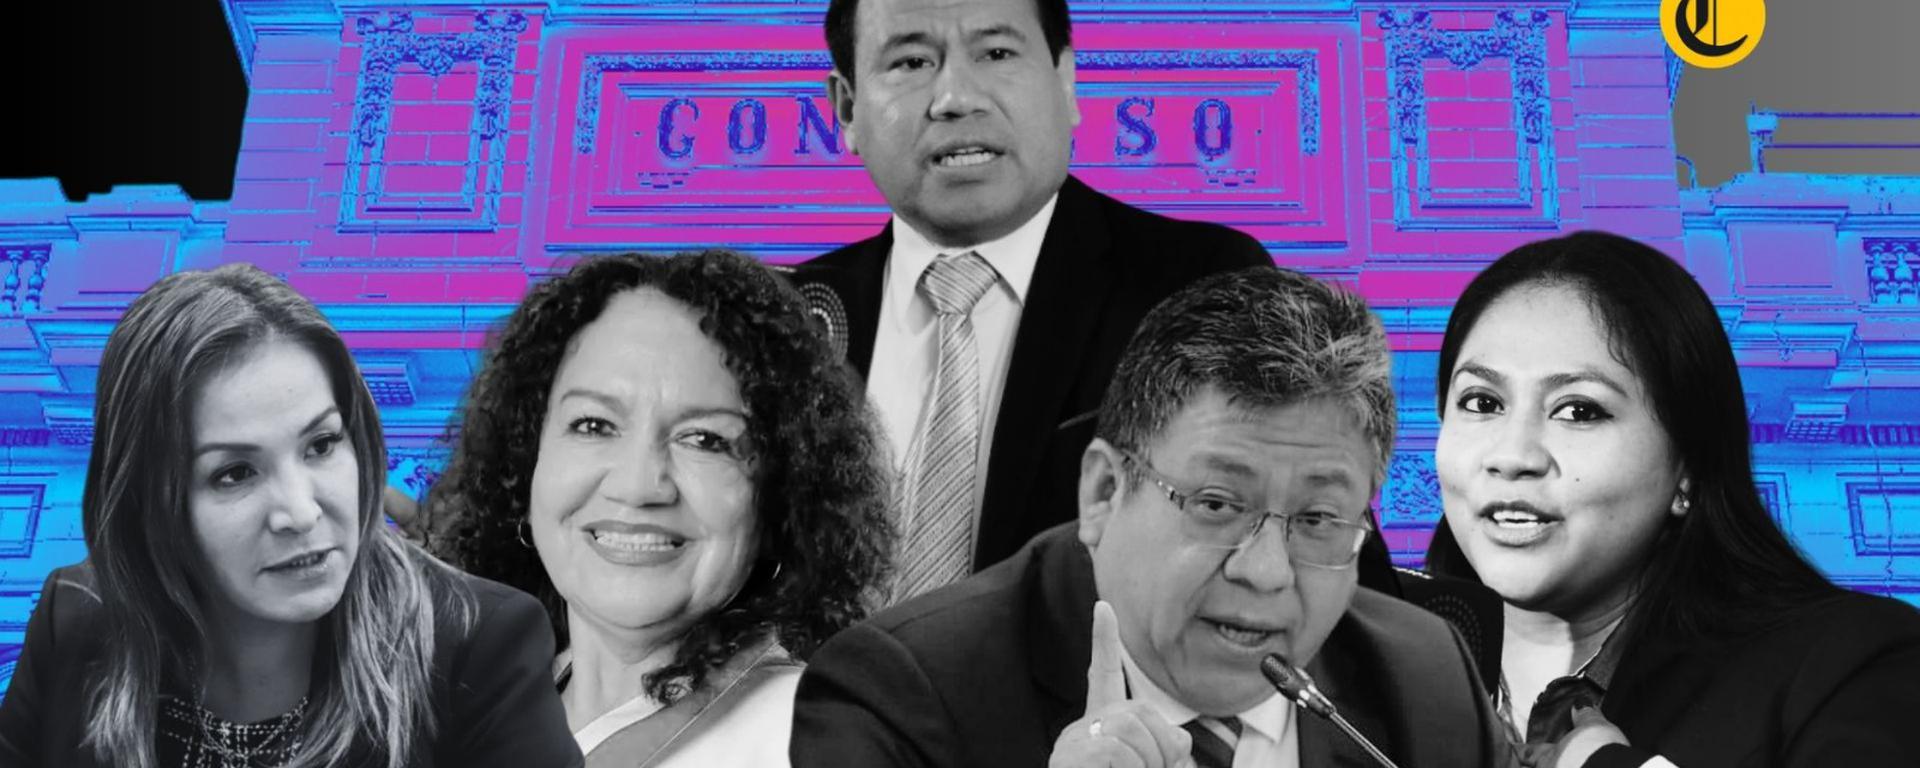 Blindados y premiados: 5 congresistas acusados de recortar sueldos ocupan altos cargos en comisiones